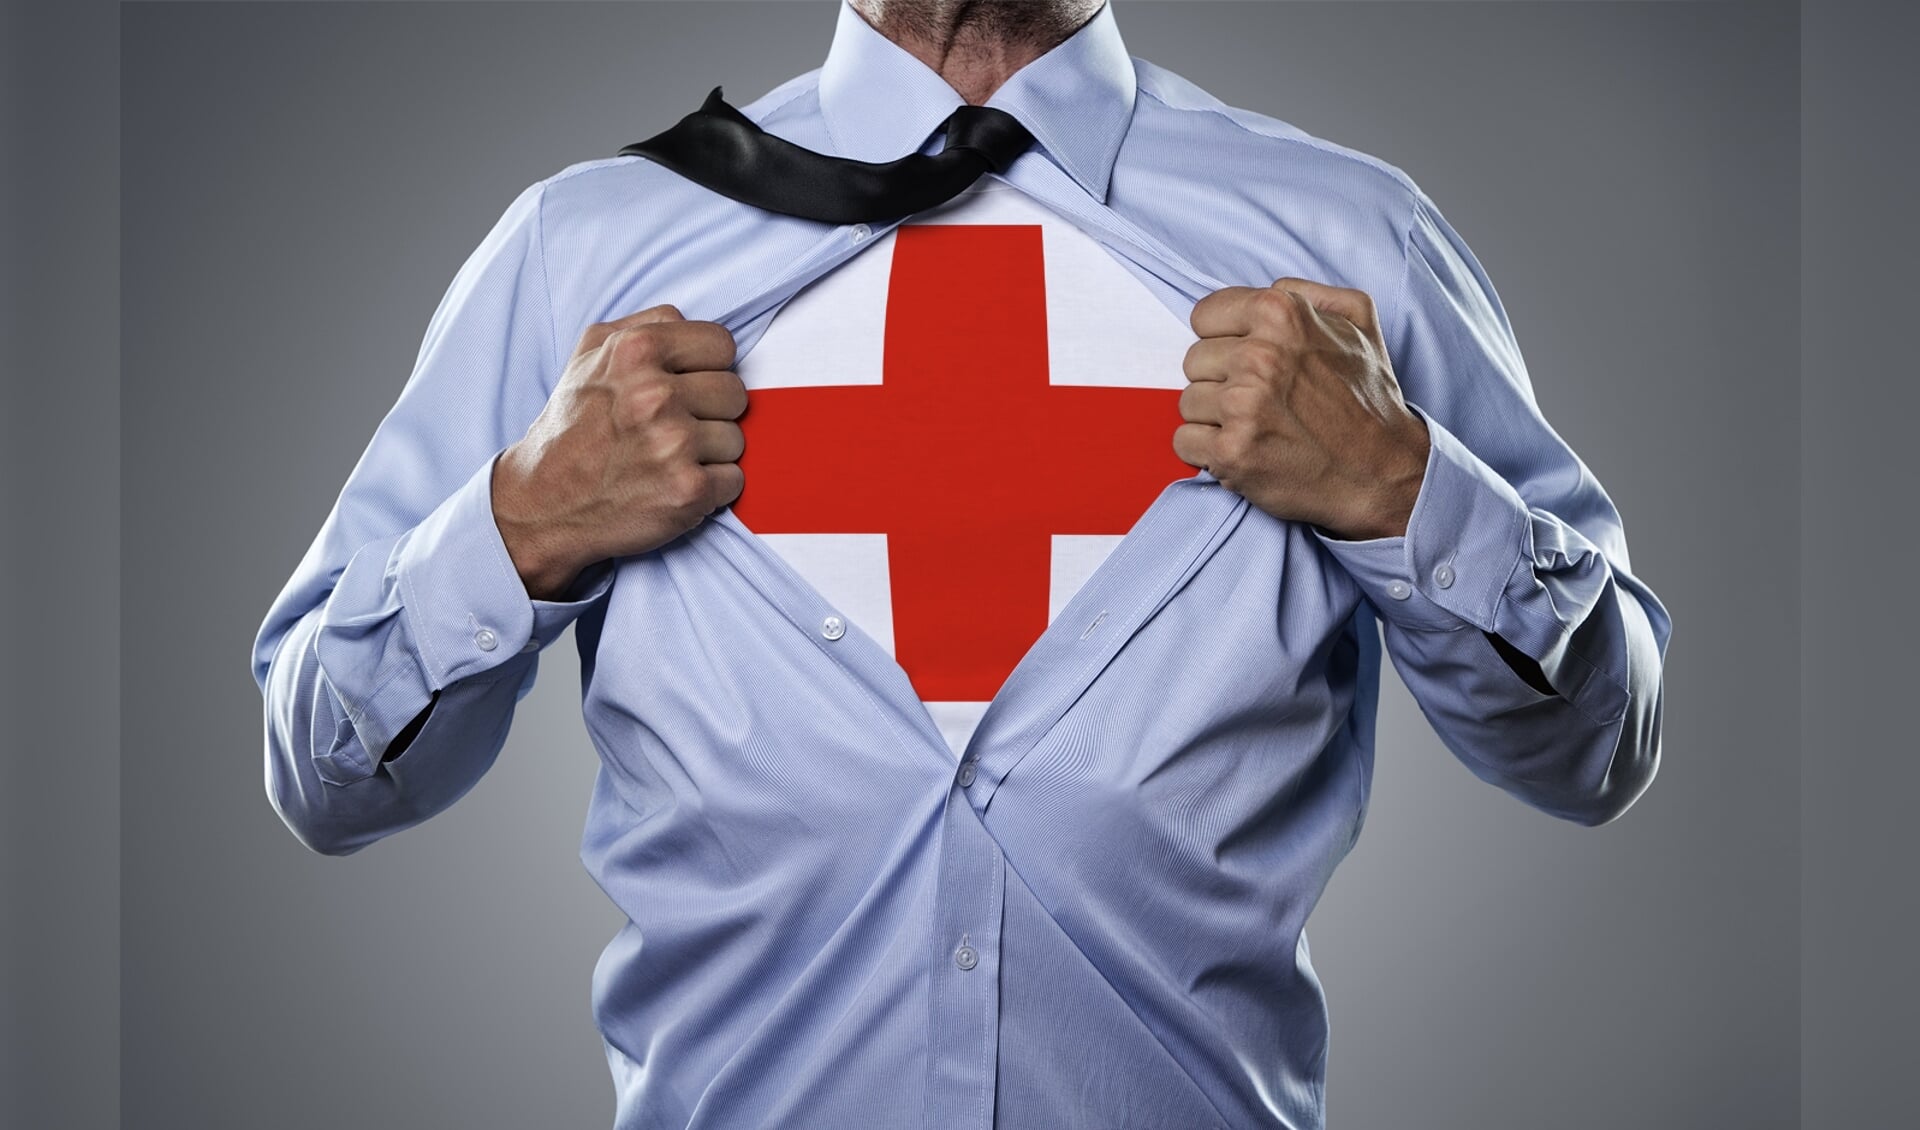 Ook jij kan levens redden - volg een EHBO cursus bij Rode Kruis Culemborg!